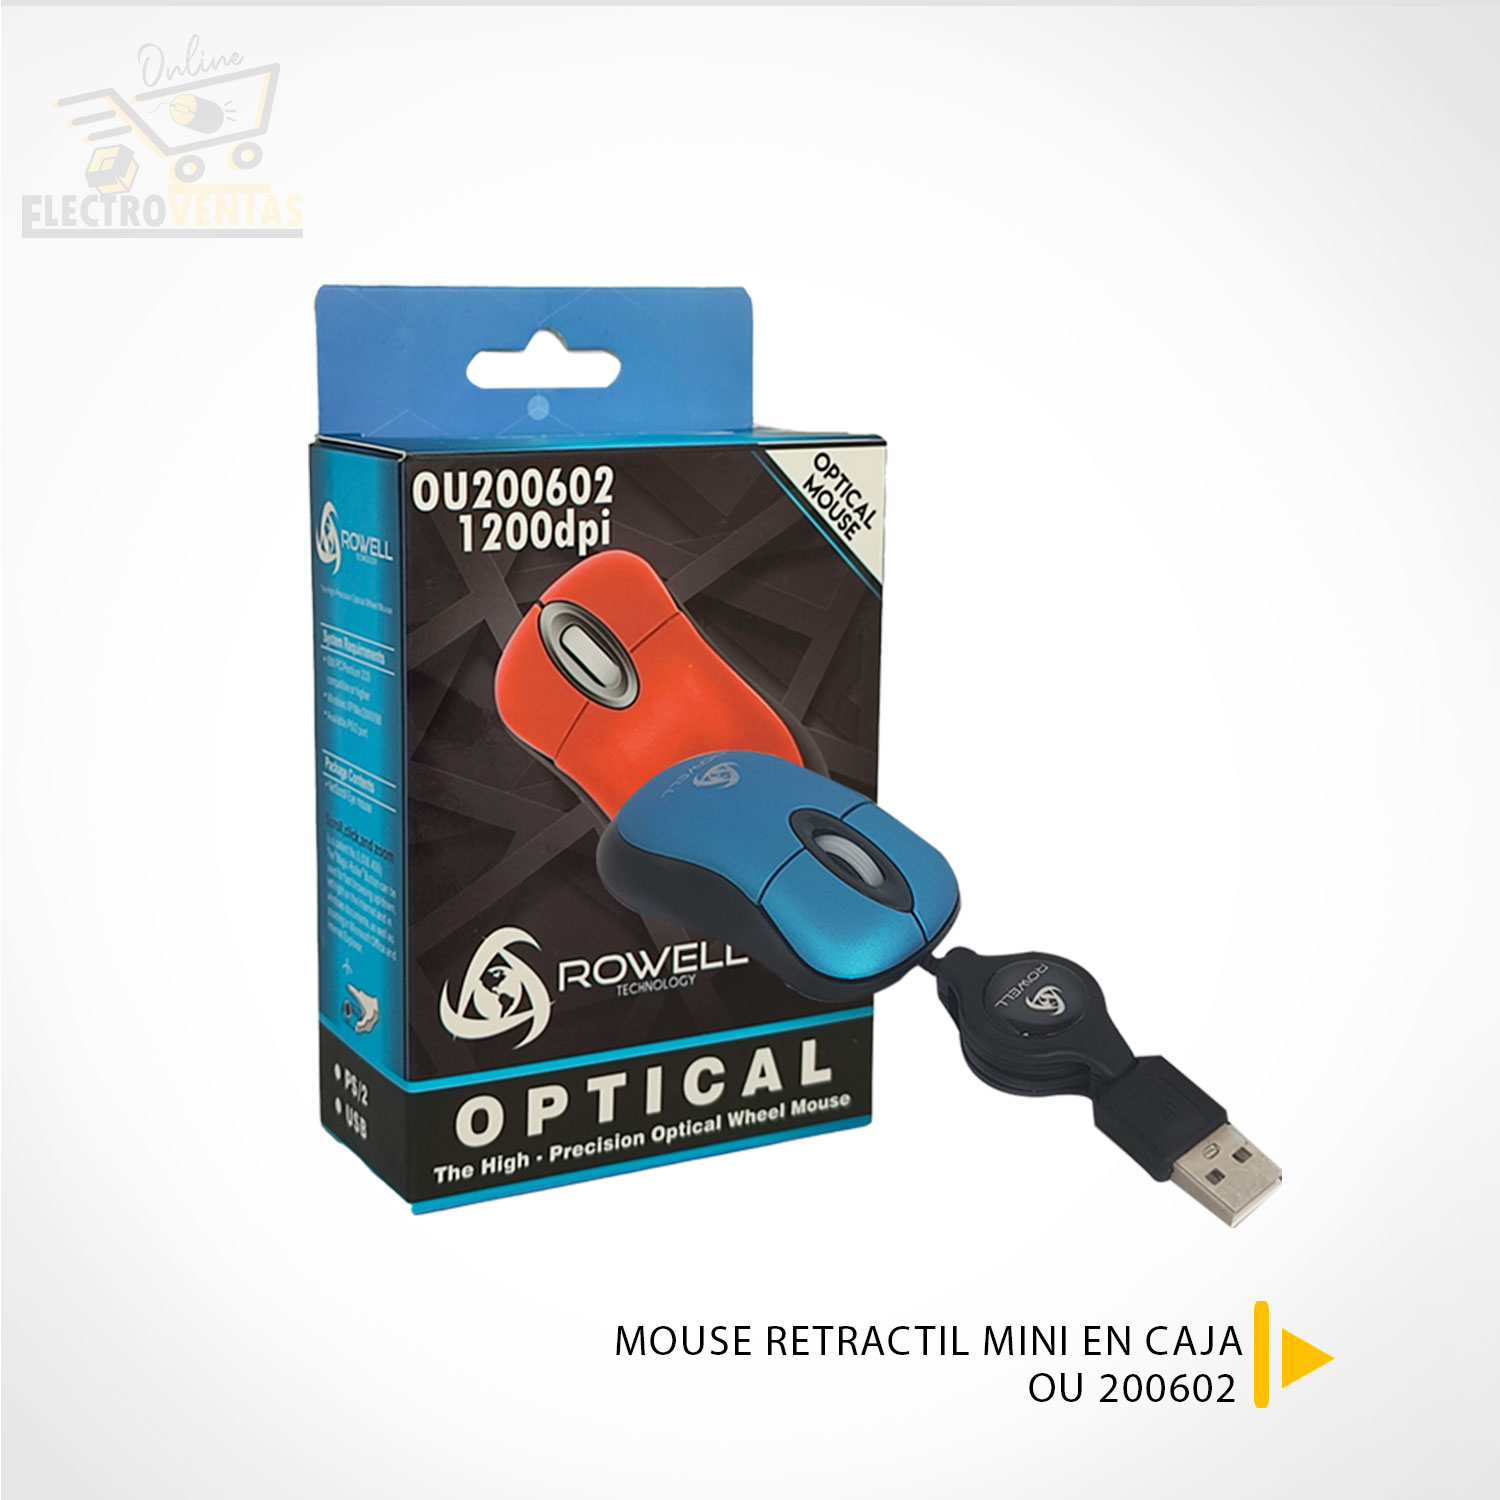 Raton mini para portatil, con Cable Retractil, optico